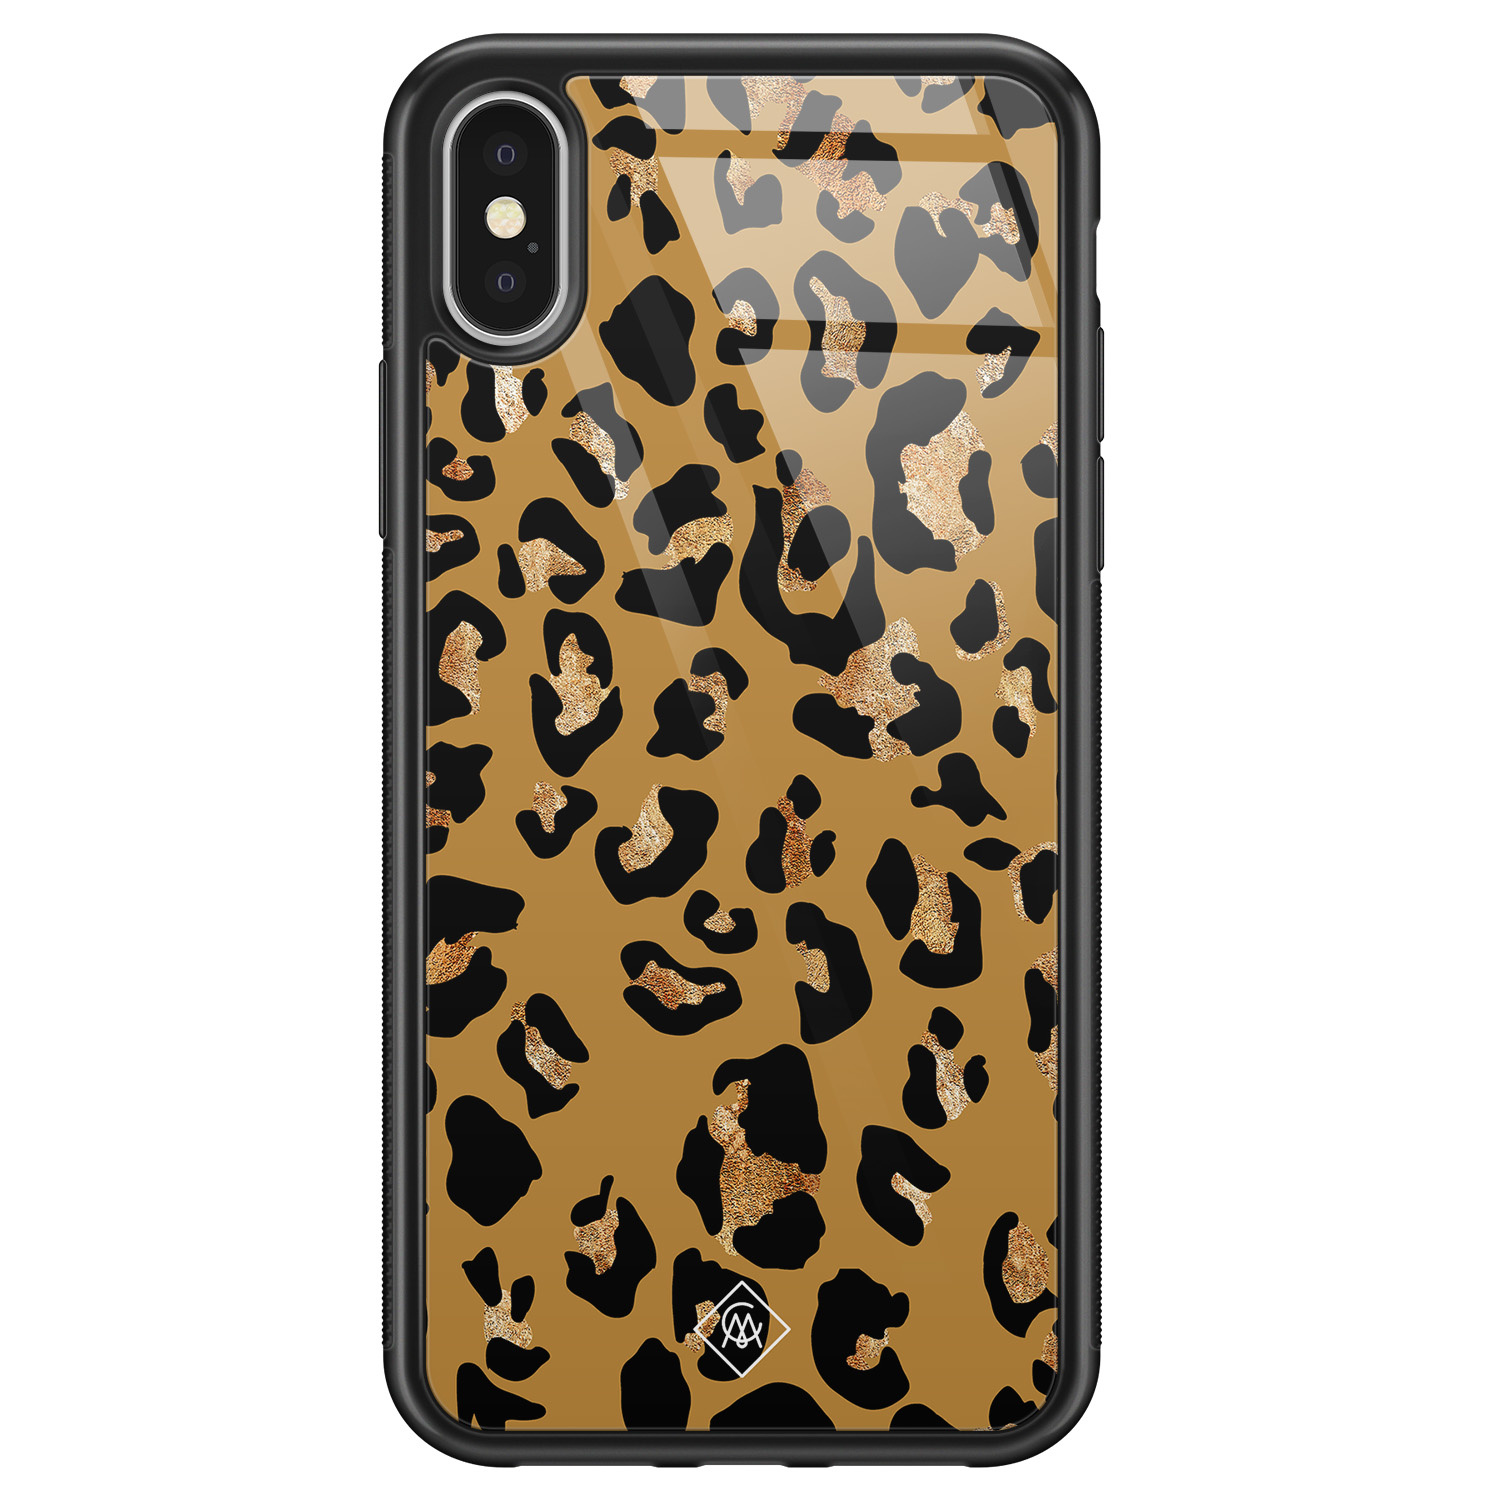 iPhone X/XS glazen hardcase - Jungle wildcat